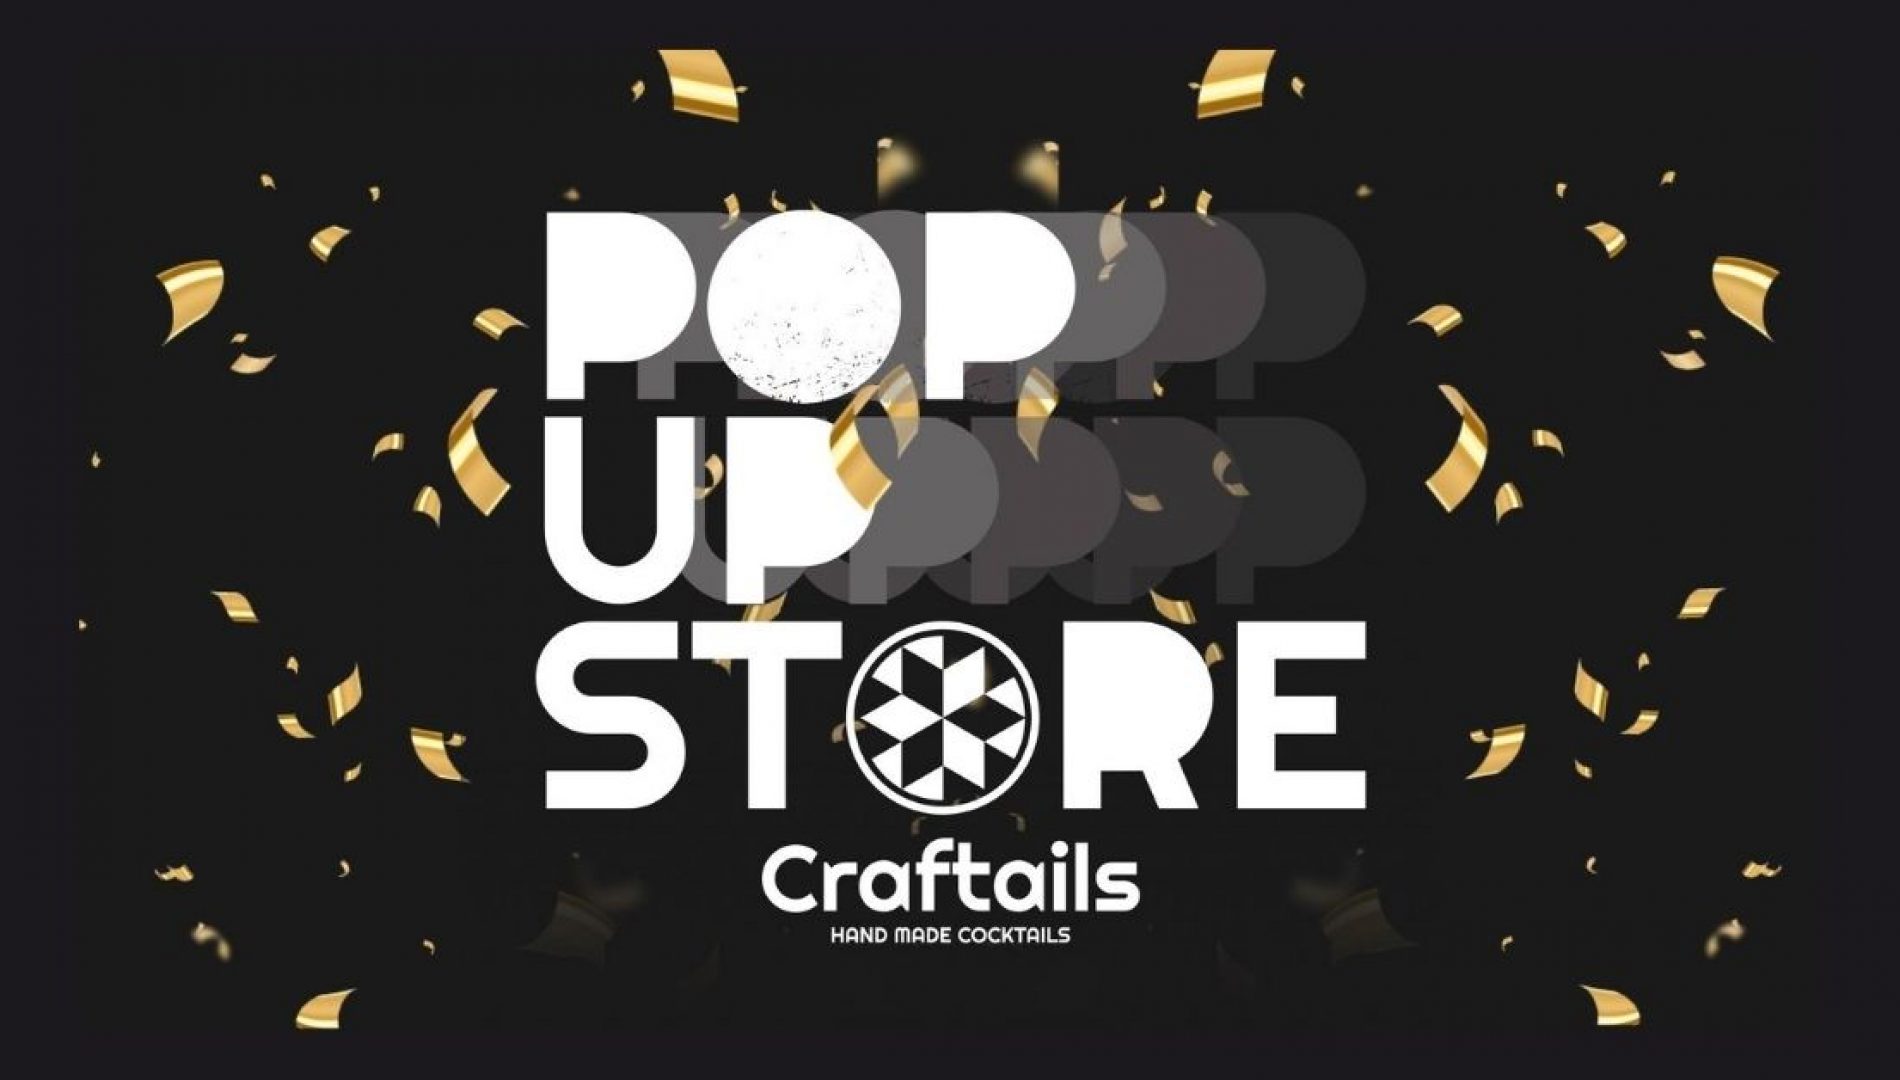 De pop-up store van Craftails cocktails